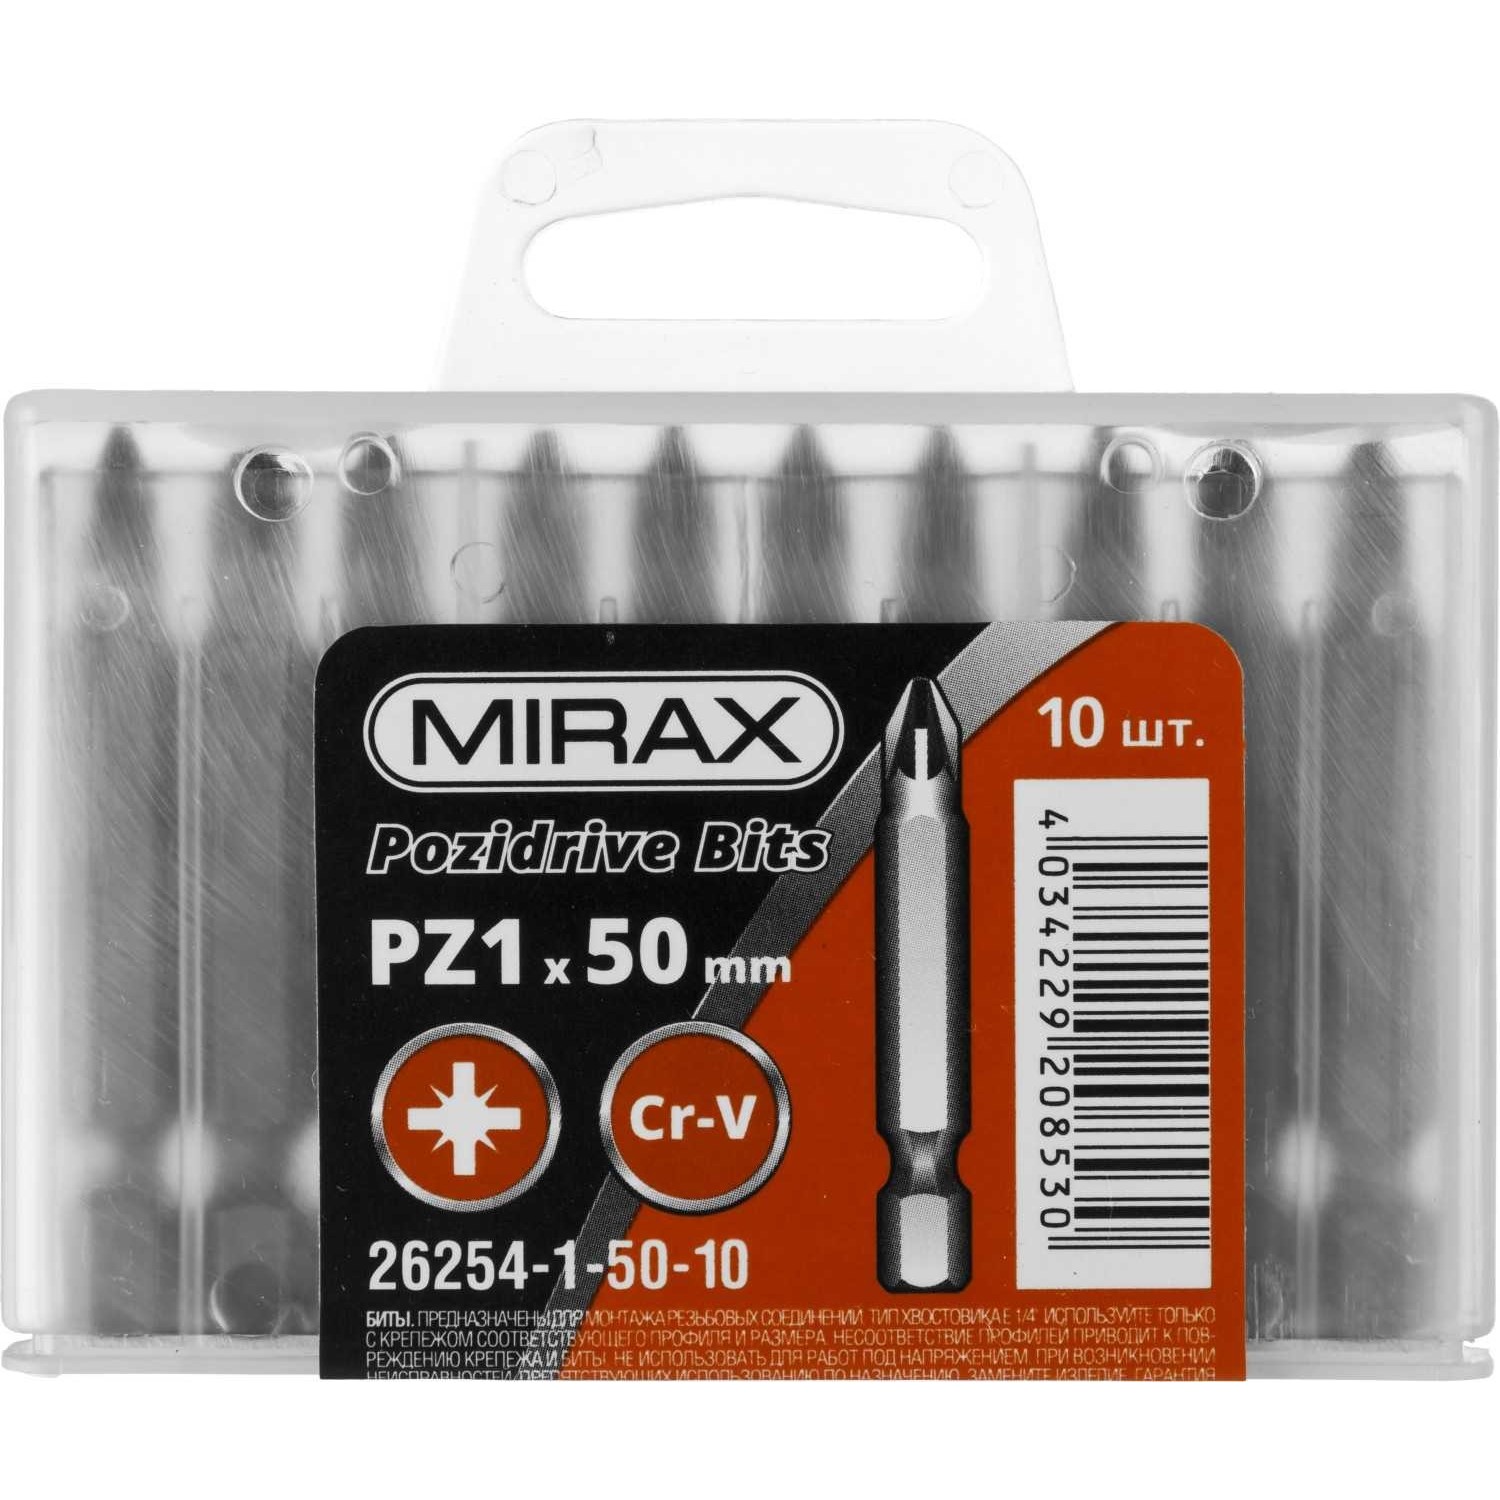 Mirax 26254-1-50-10